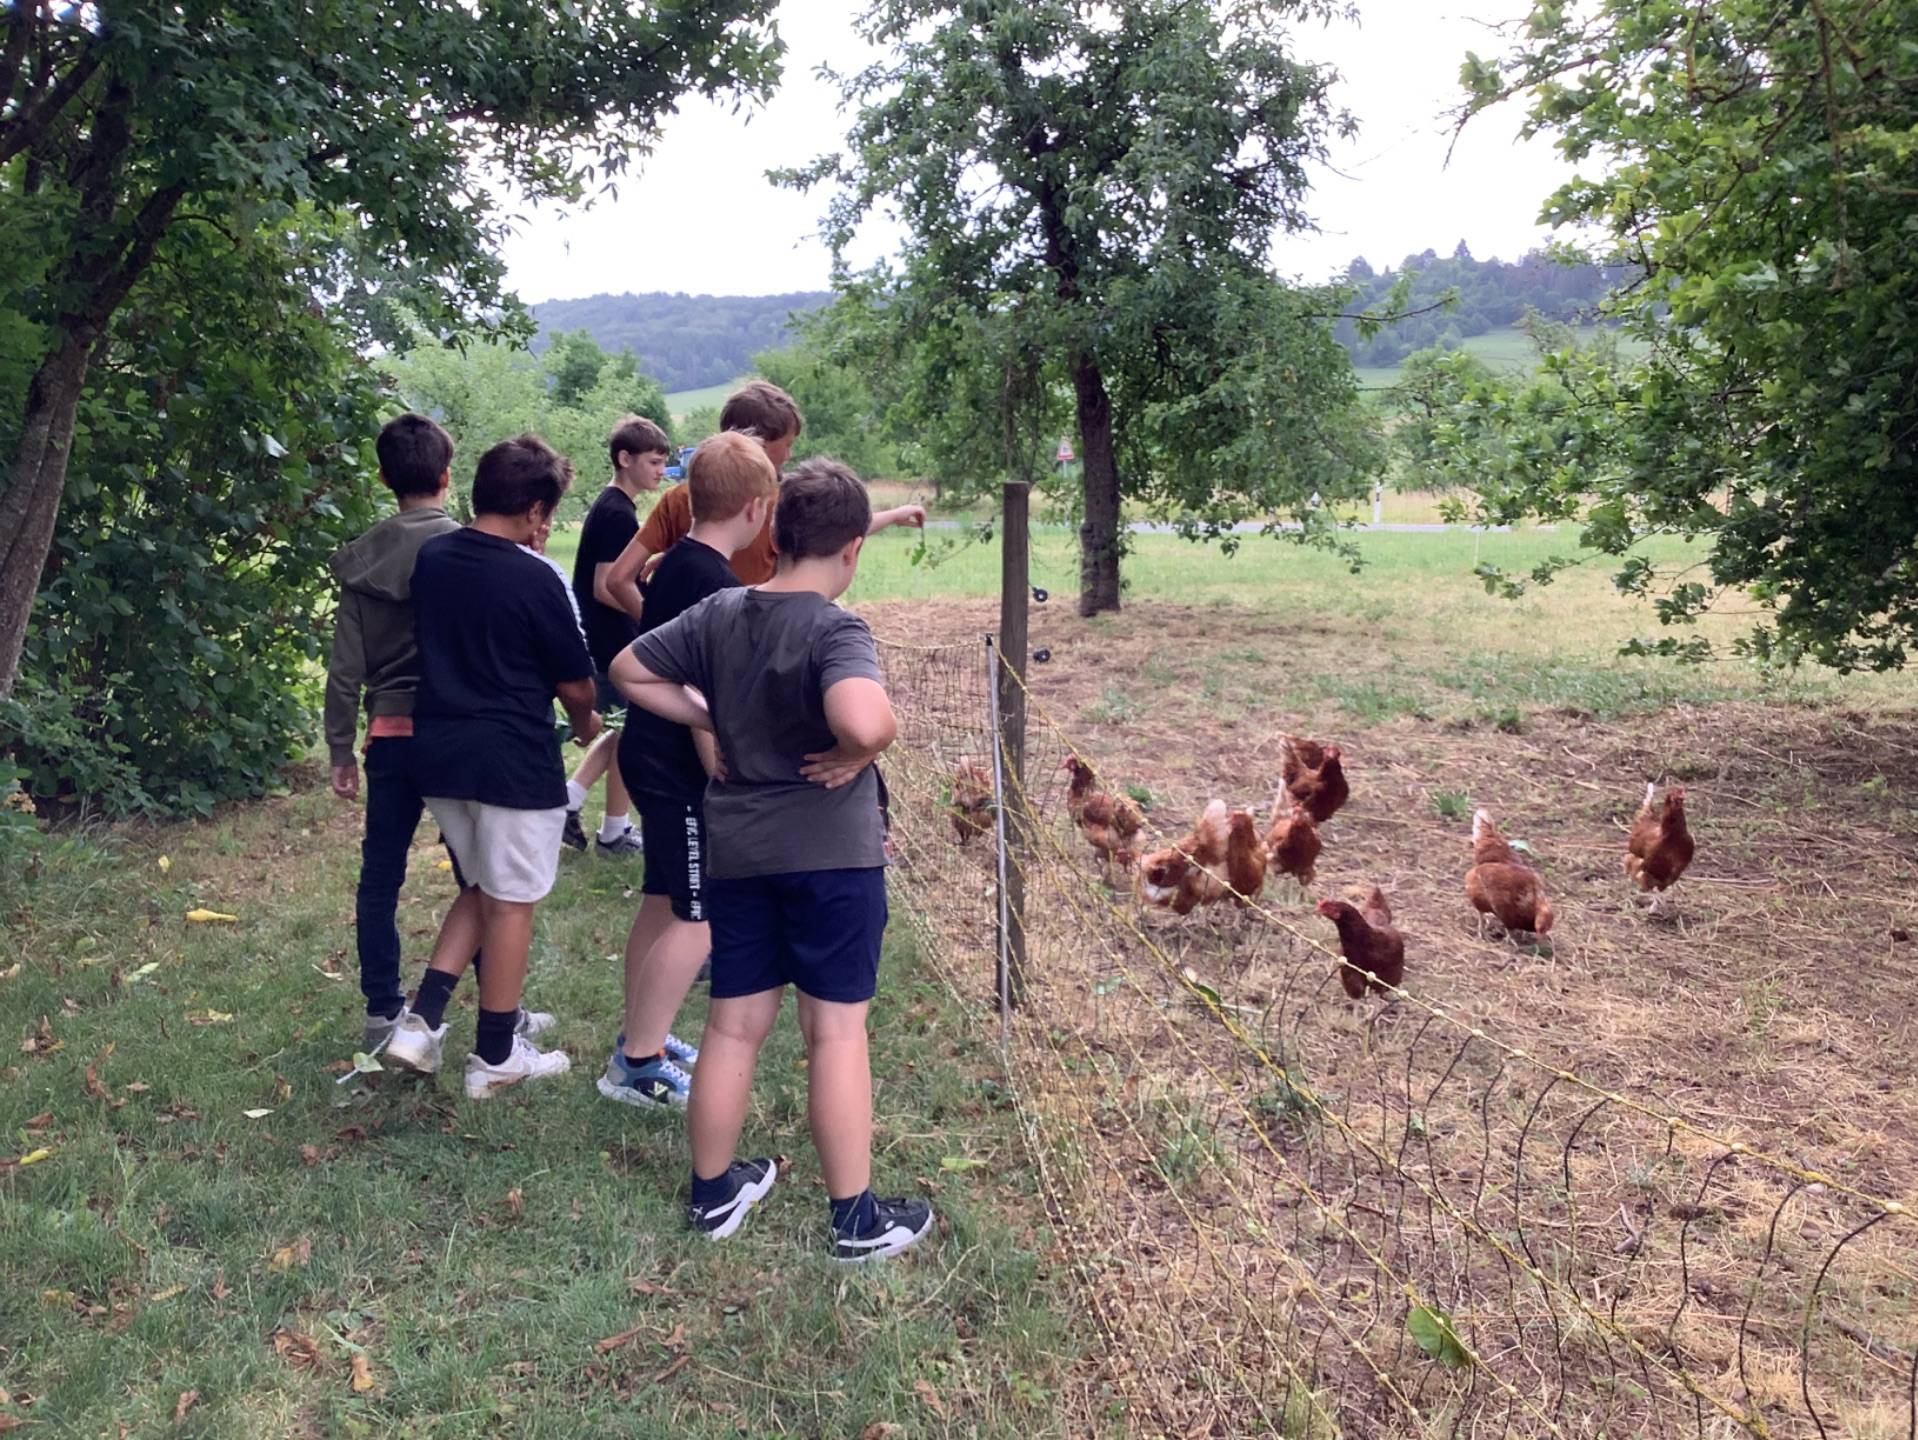  Schüler betrachten Hühner 